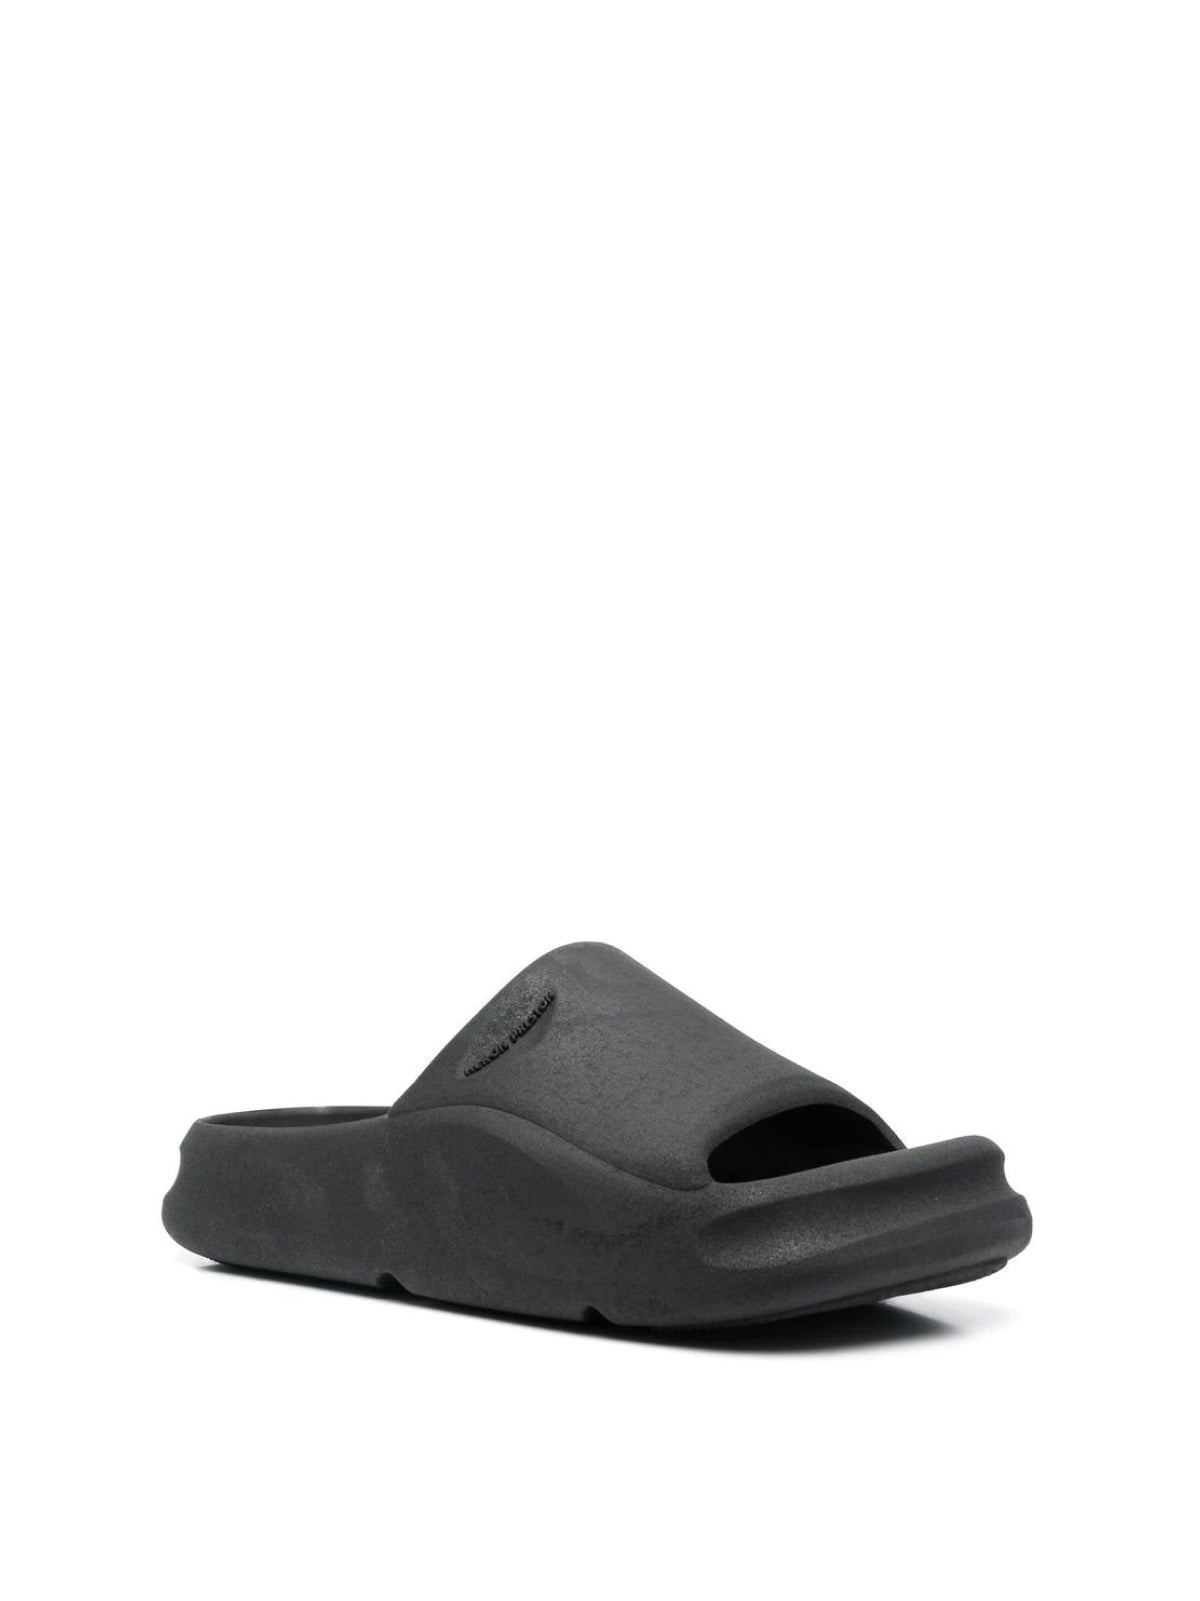 Eco Moulded Sliders Sandals